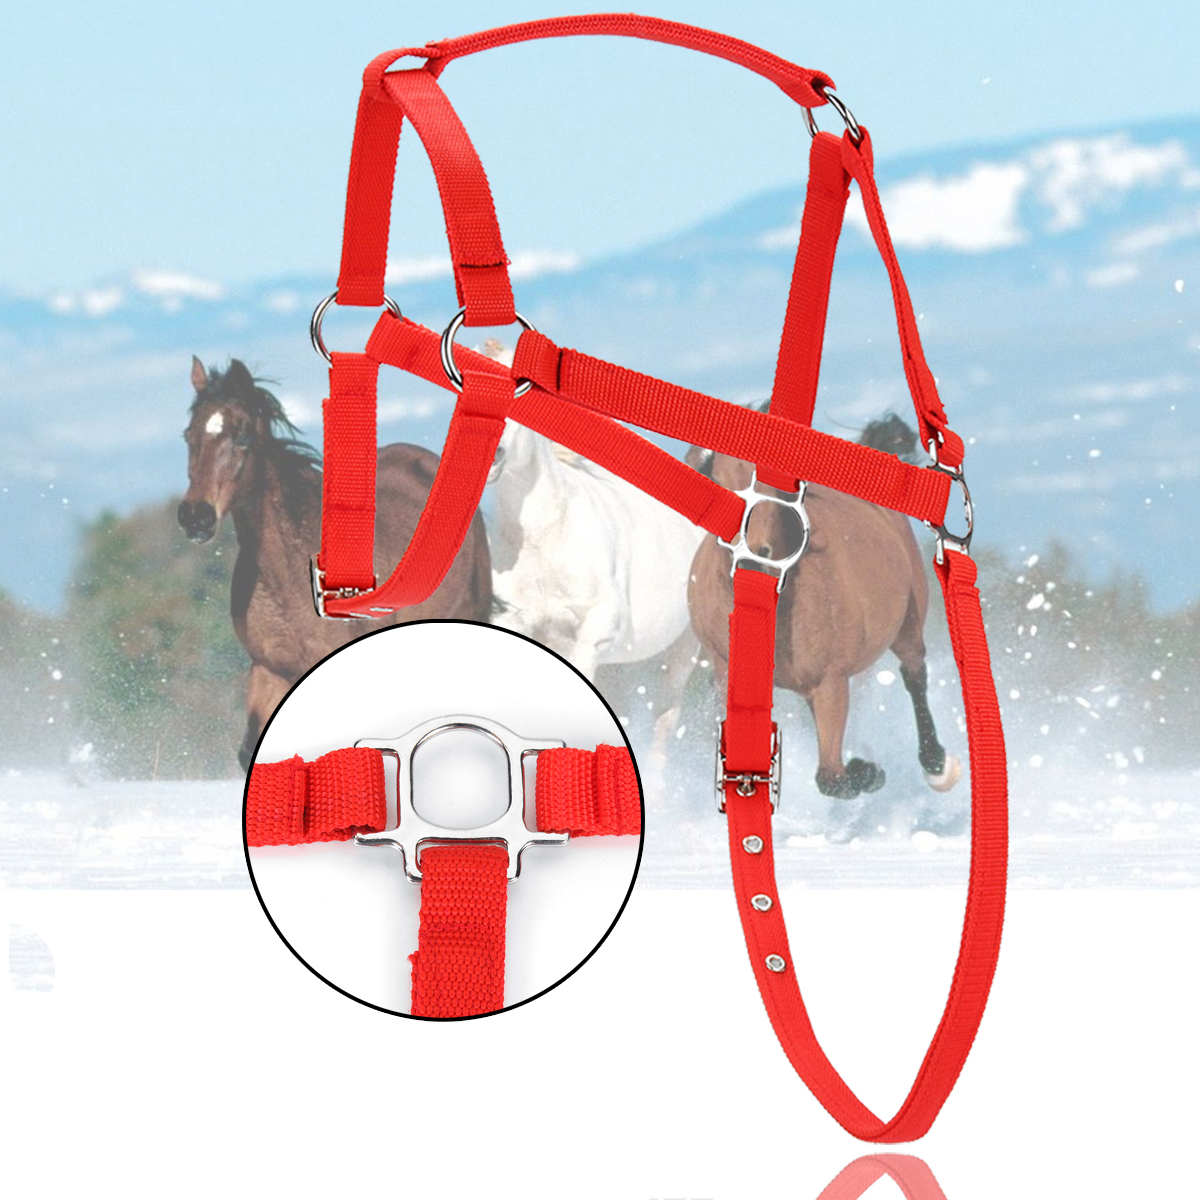 

Nylon Лошадь Harness Halter красный Horsing Riding Регулируемая для Pony Spors Конные принадлежности